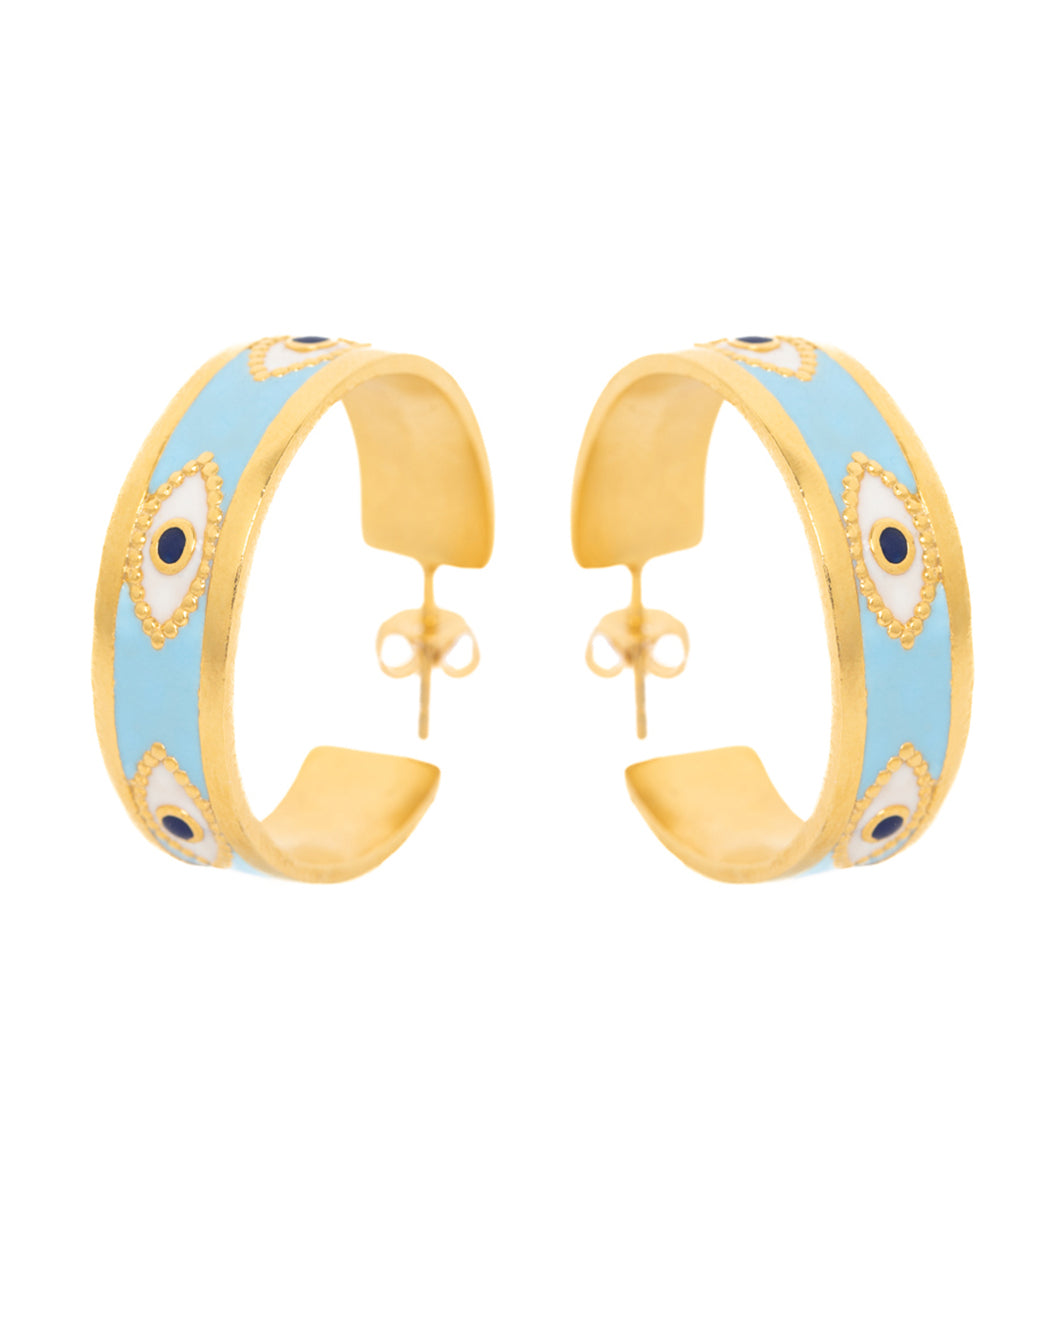 Azzur earrings